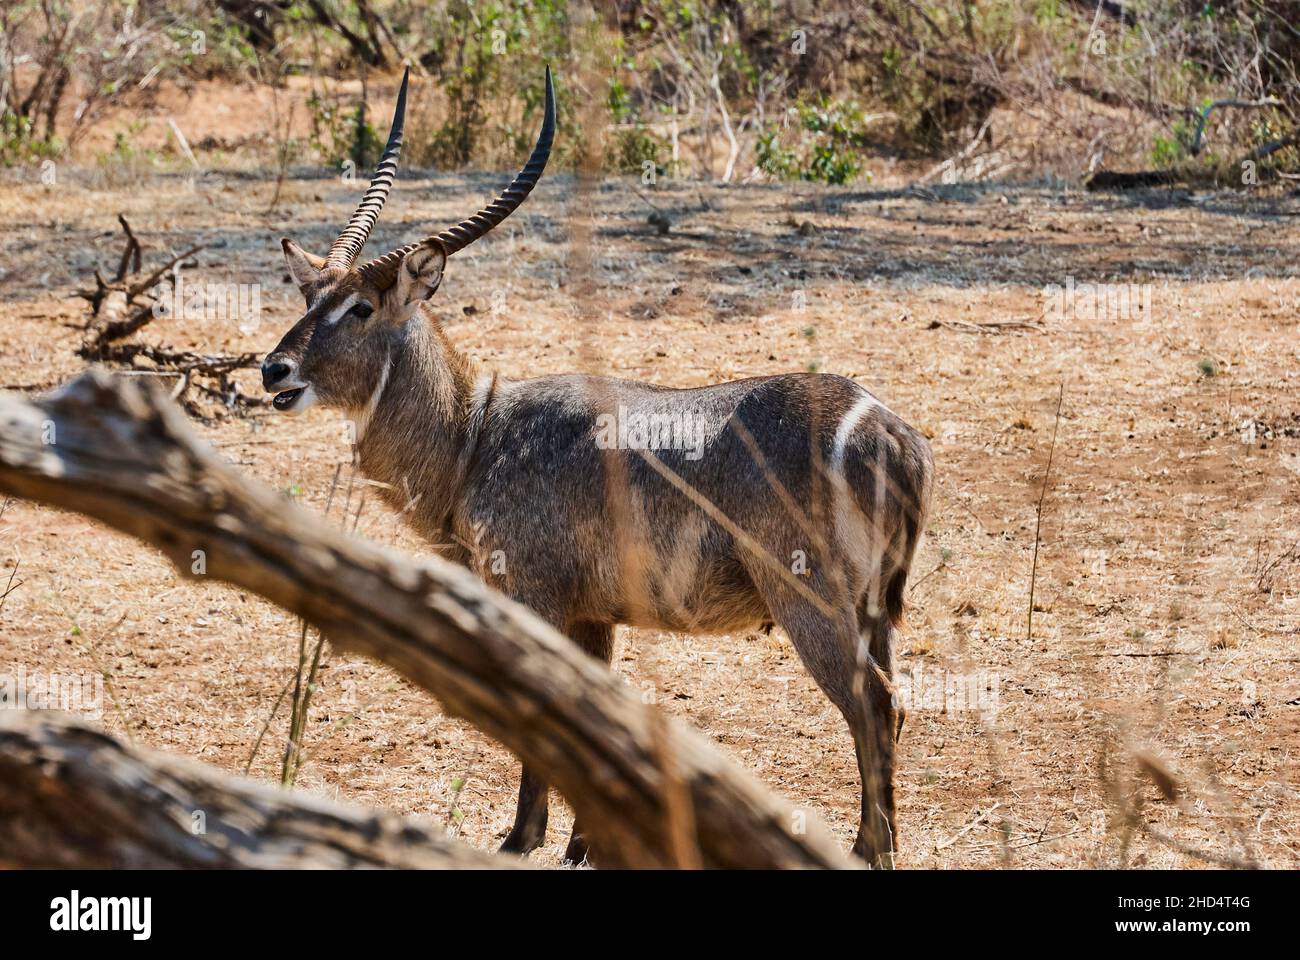 L'hydrobuck mâle ellipsiprymnus, Kobus ellipsiprymnus, est une grande antilope grise avec de grandes cornes trouvées en Afrique. Banque D'Images